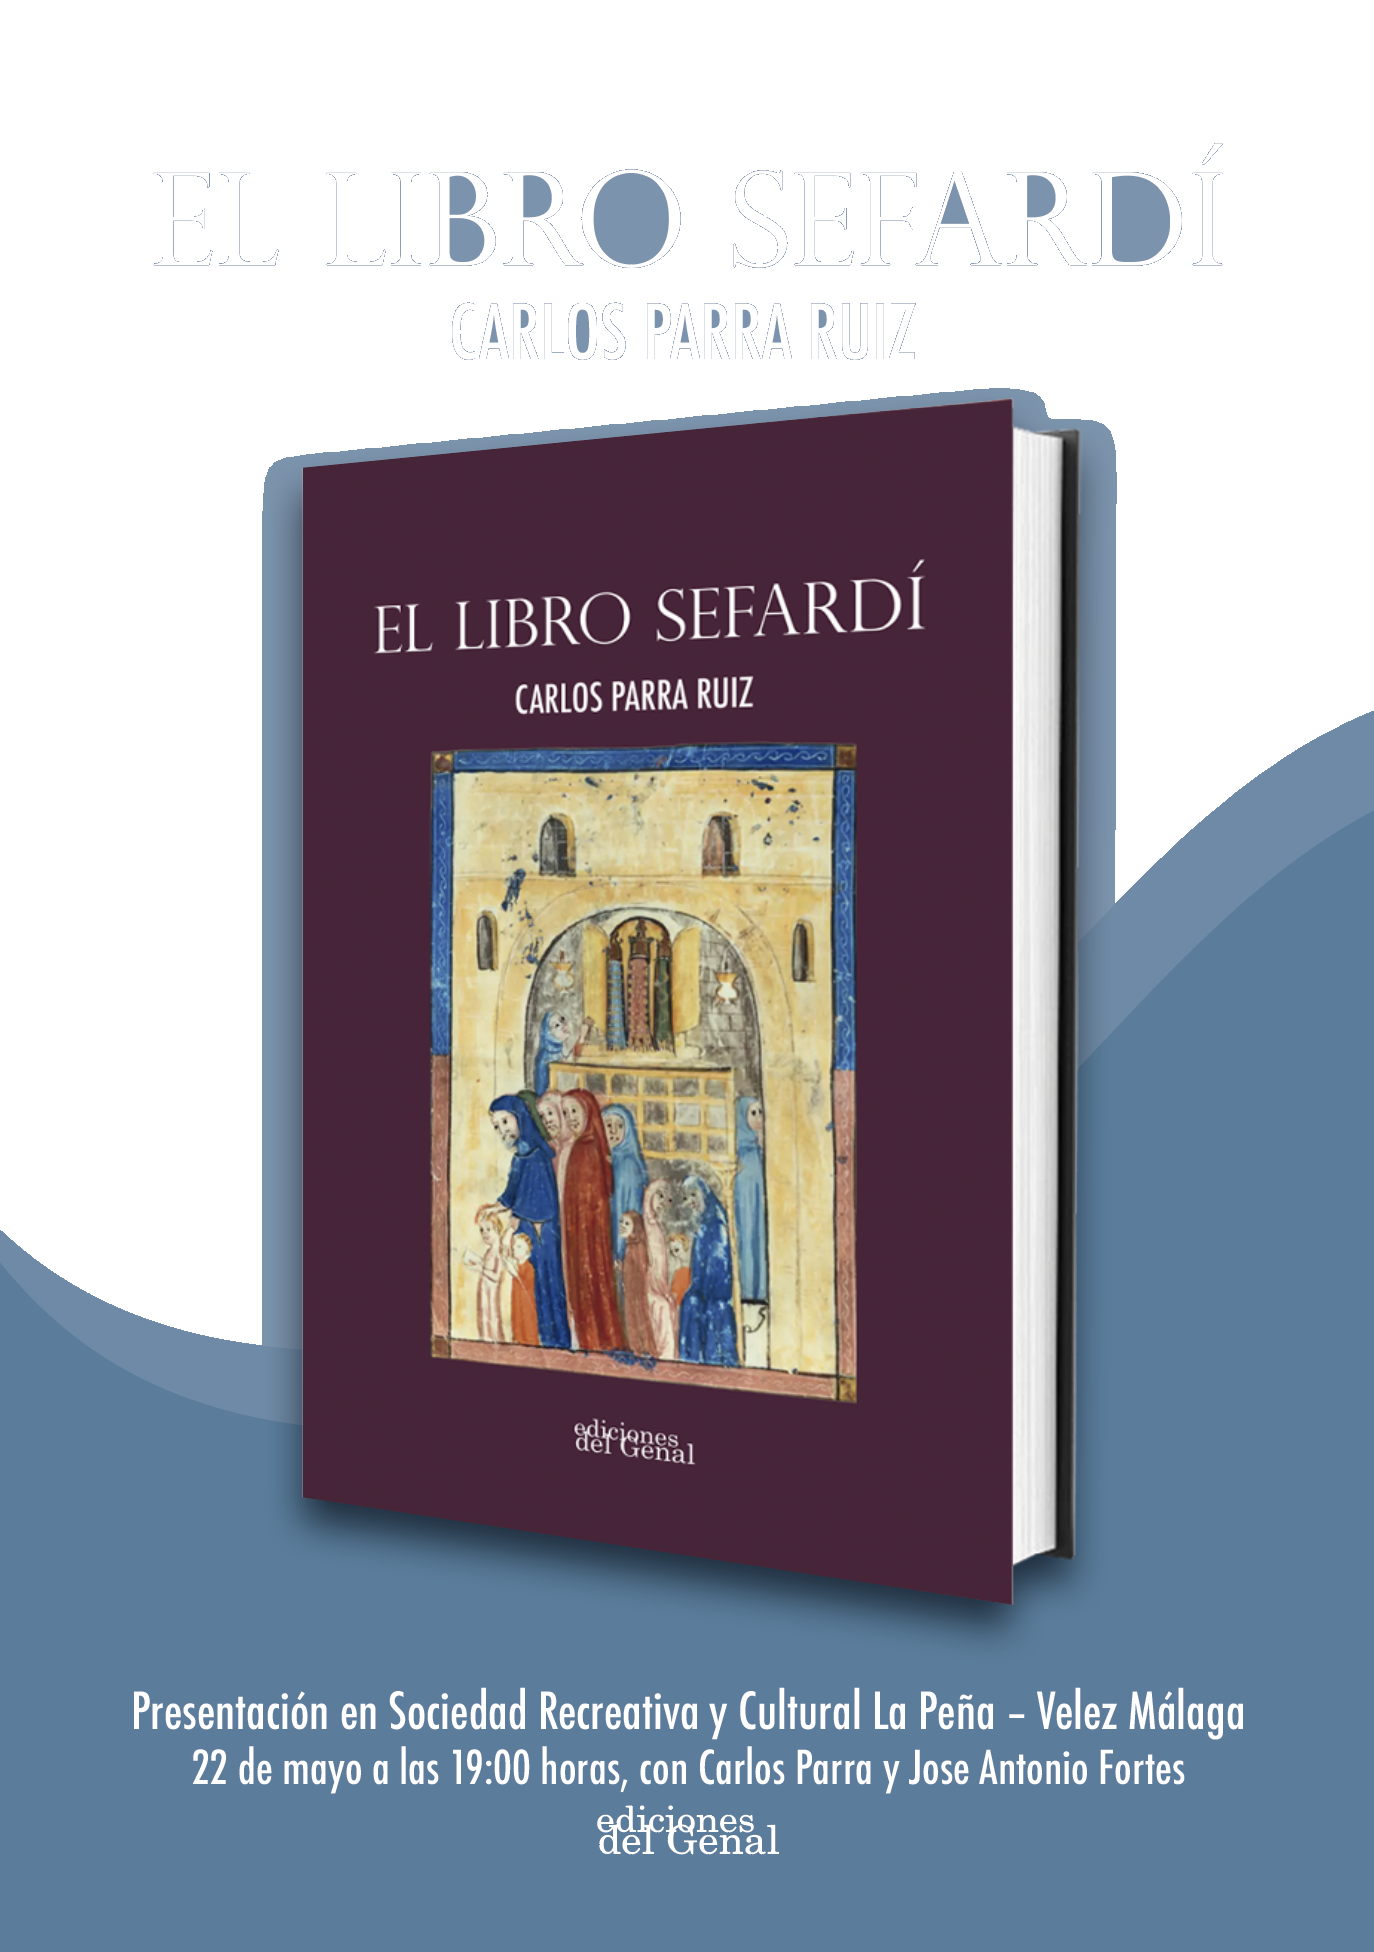 PRESENTACIÓN EN VELEZ-MÁLAGA - EL LIBRO SEFARDÍ de Carlos Parra Ruiz (Ediciones del Genal) 